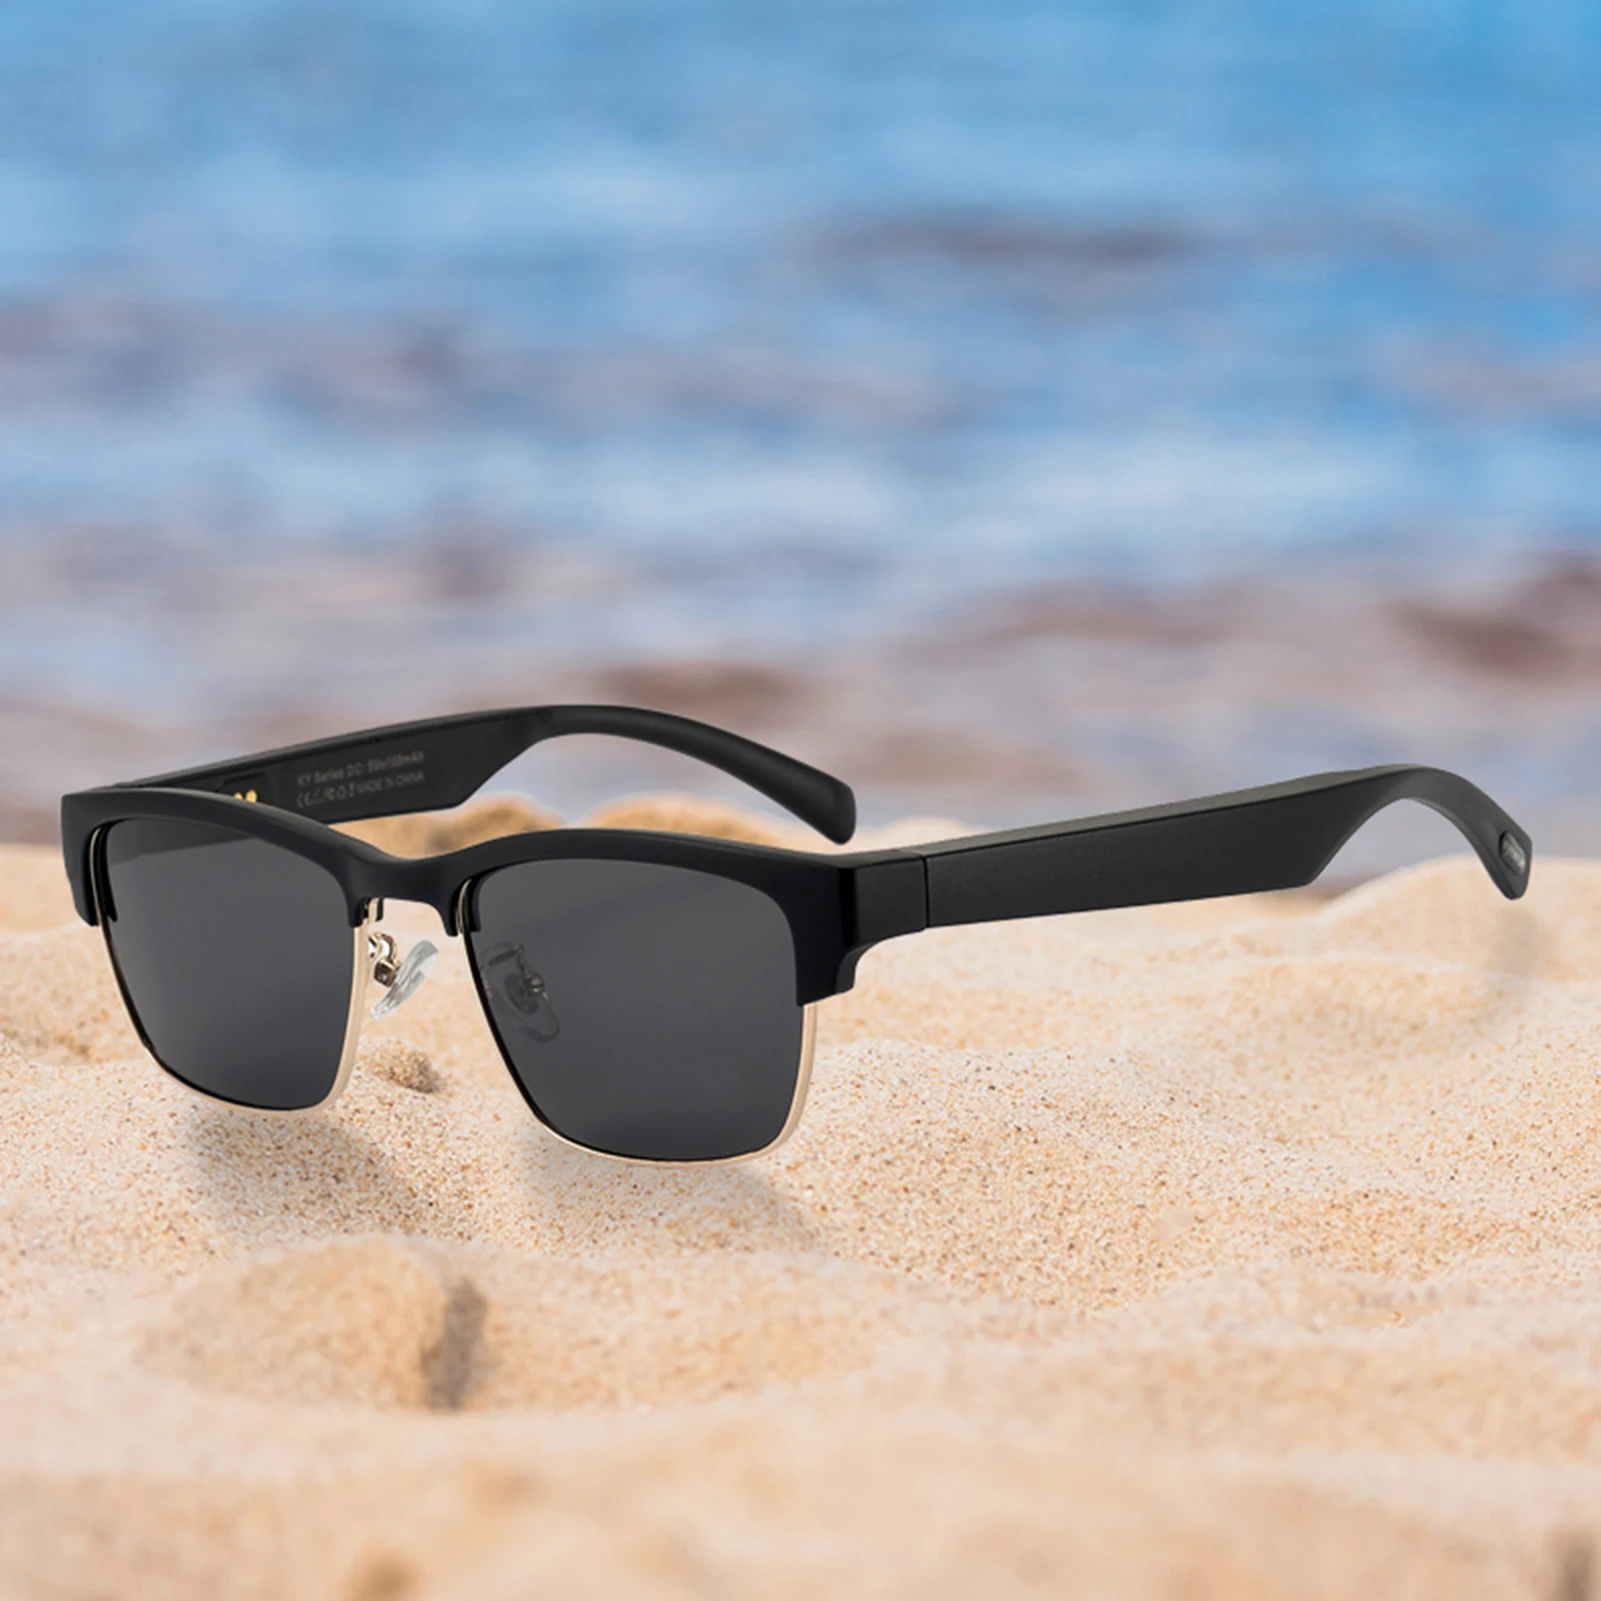 Gafas inteligentes inalámbricas BT5.0, auriculares para llamadas, Audio y música, gafas de sol inteligentes de alta tecnología para exteriores, compatibles con IOS y Android